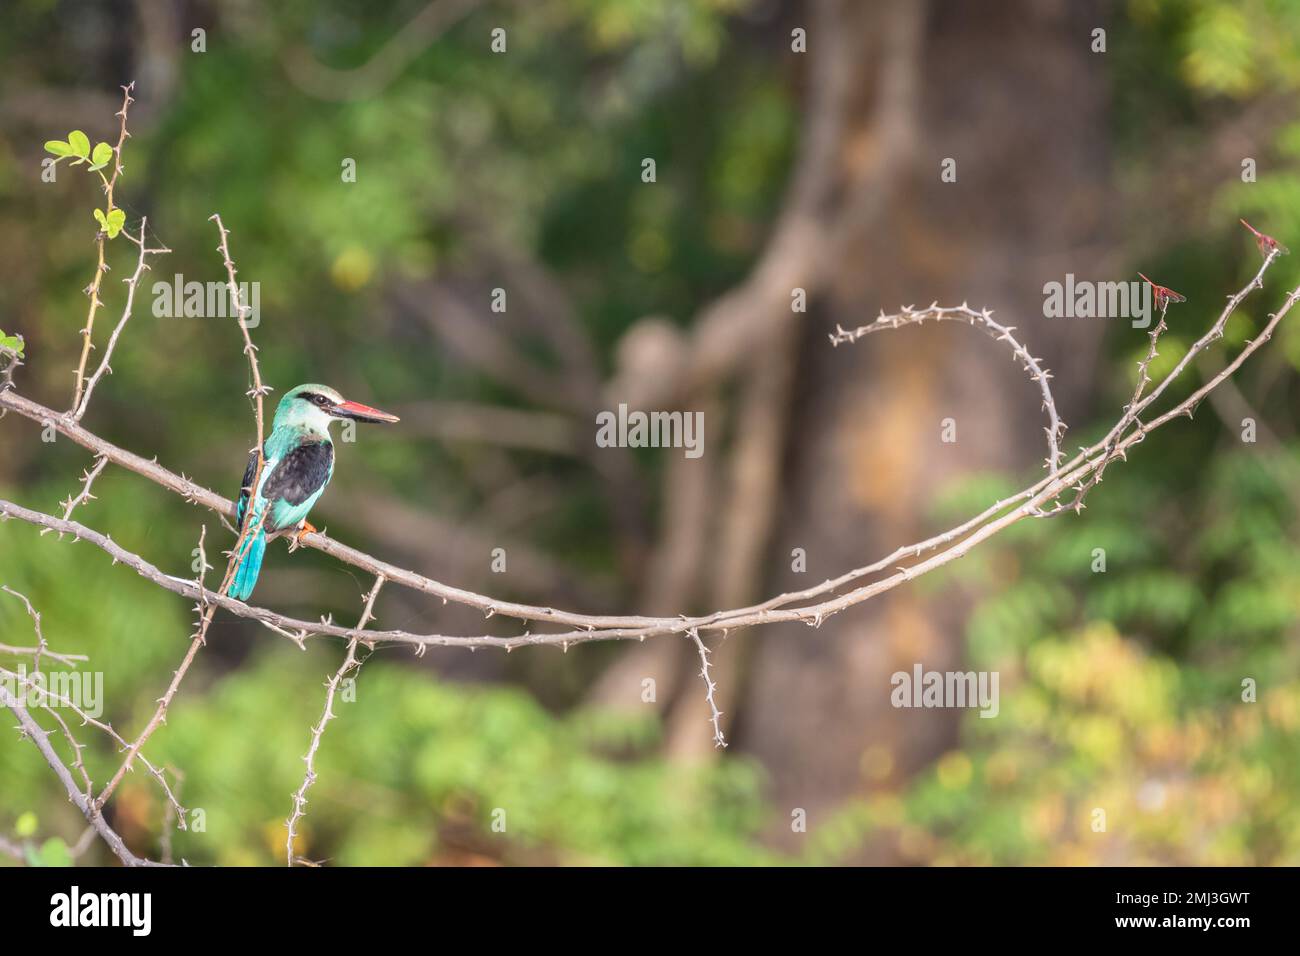 kingfisher croisé (Halcyon malimbica), perché sur la branche, Gambie, Afrique Banque D'Images